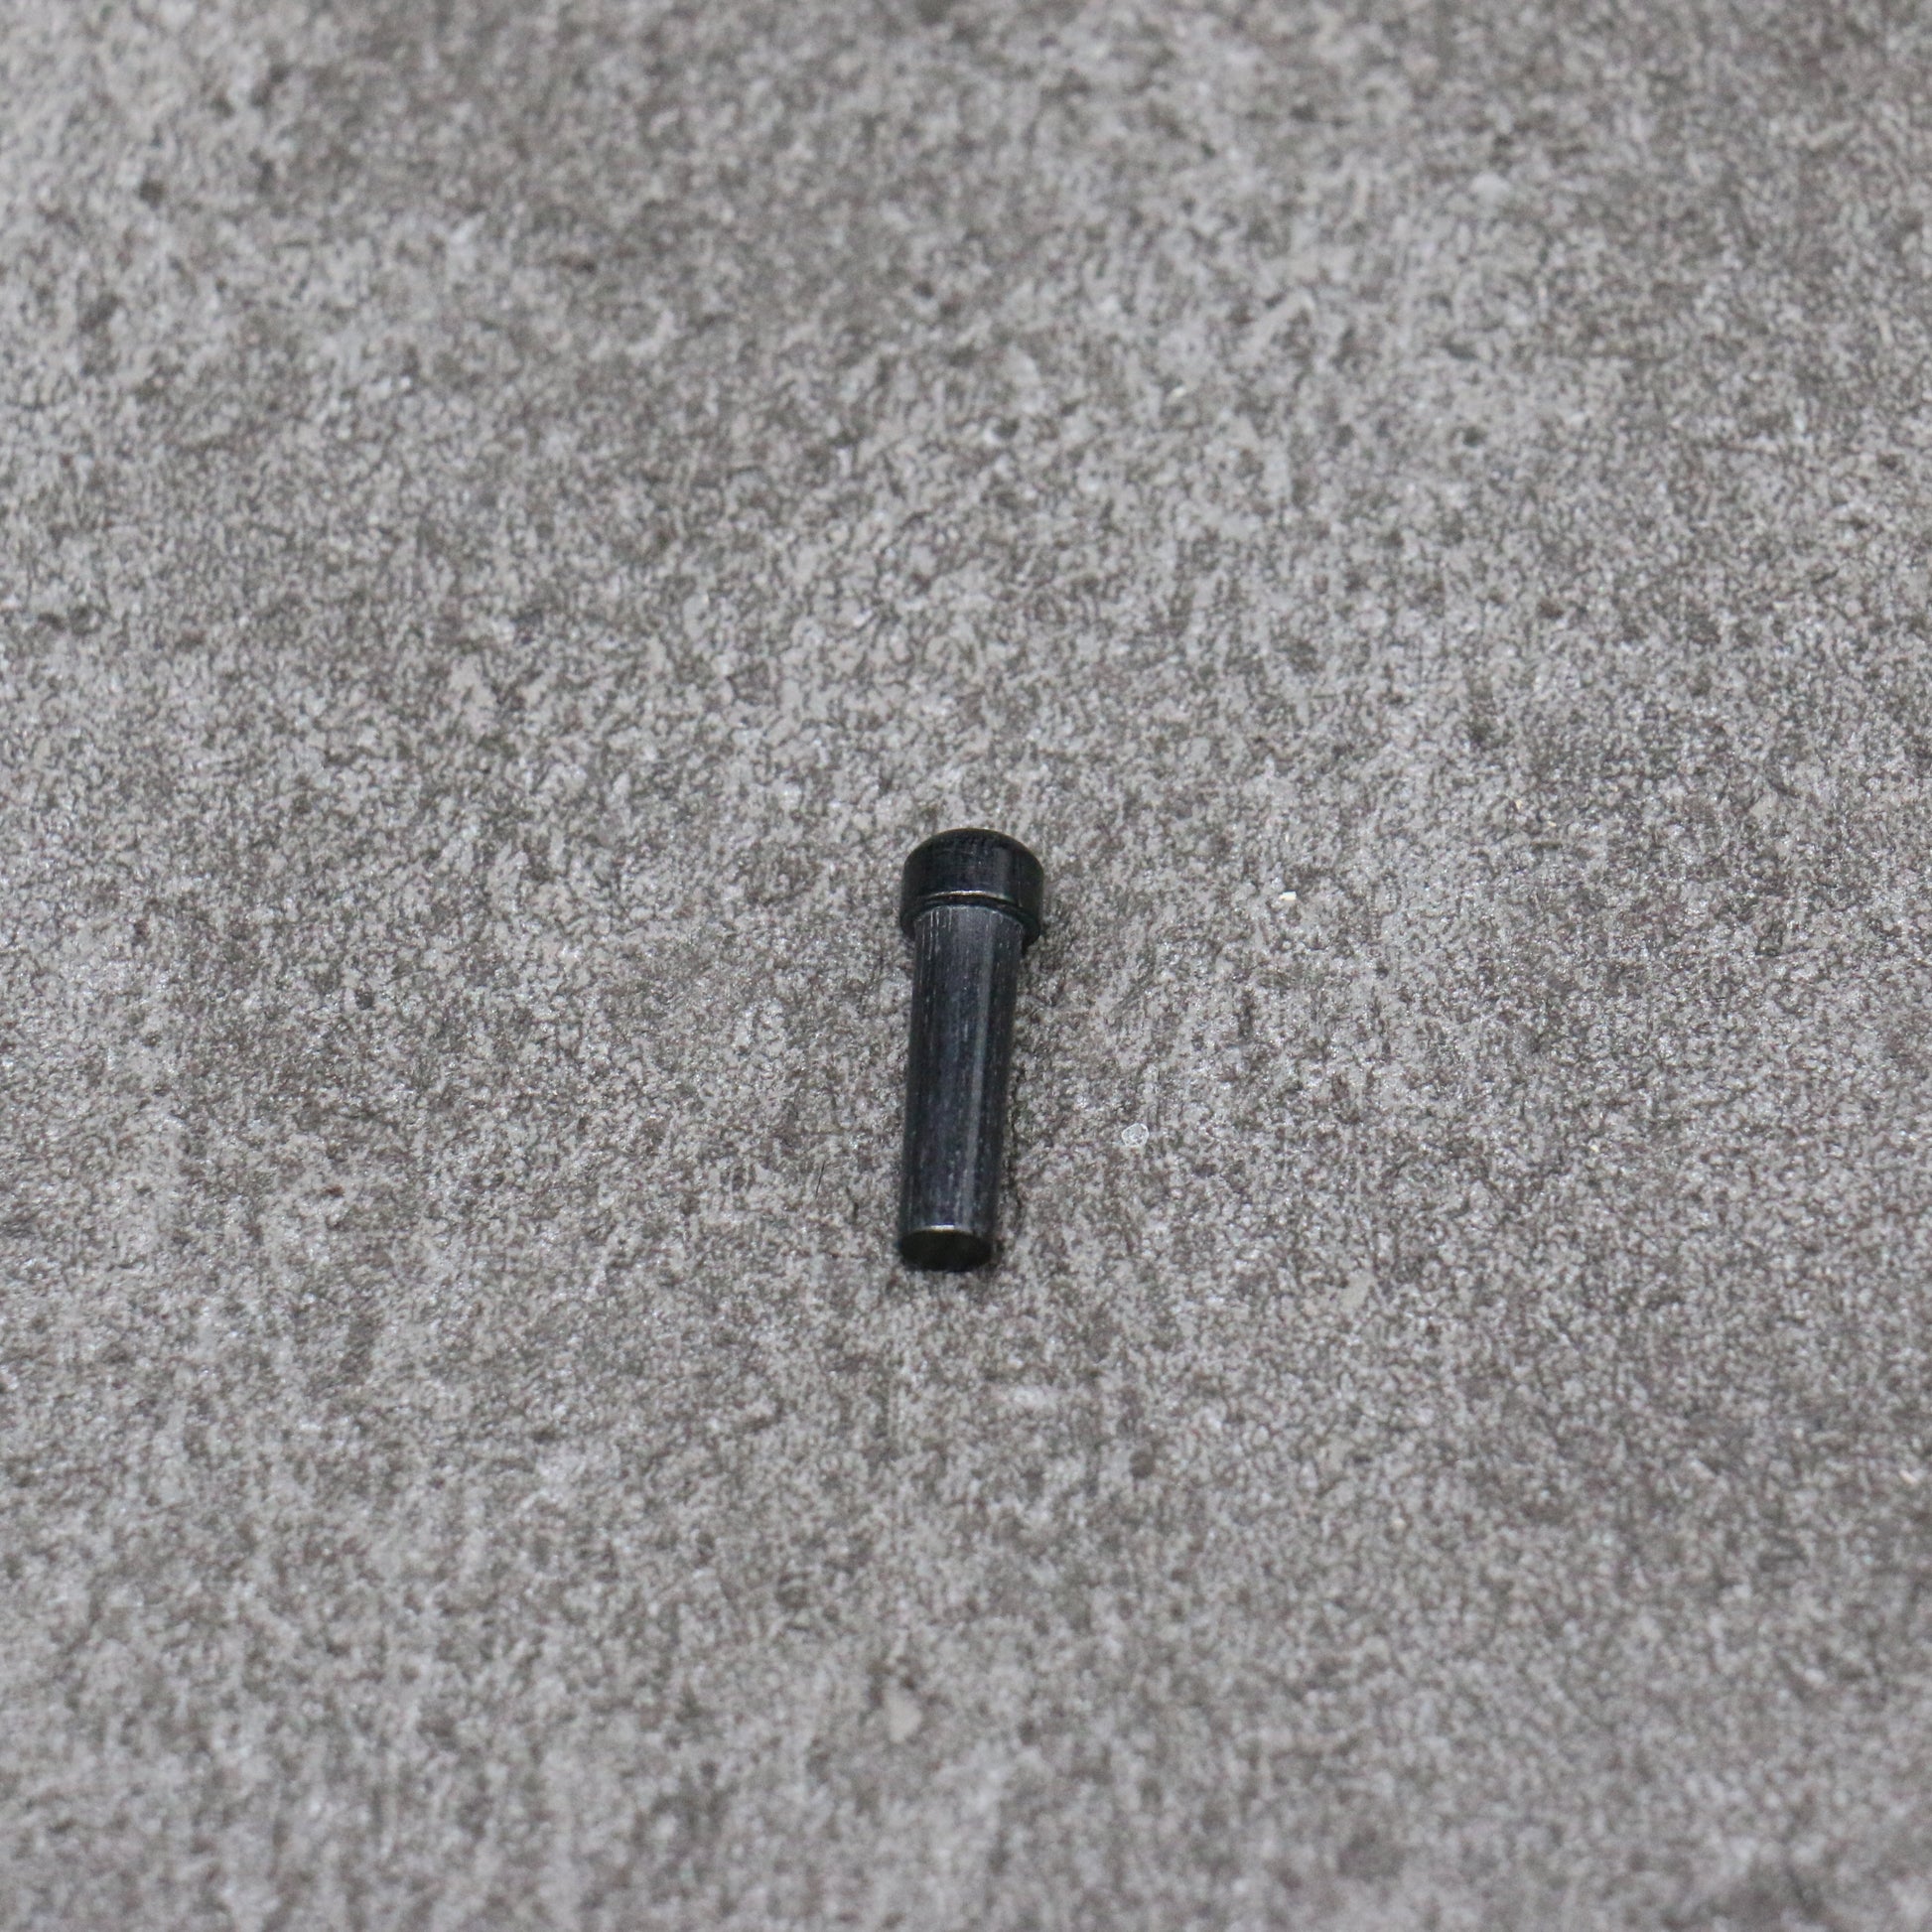 黒石目 朴 鞘 80mm ペティーナイフ用 合板ピン付き Kaneko - 清助刃物